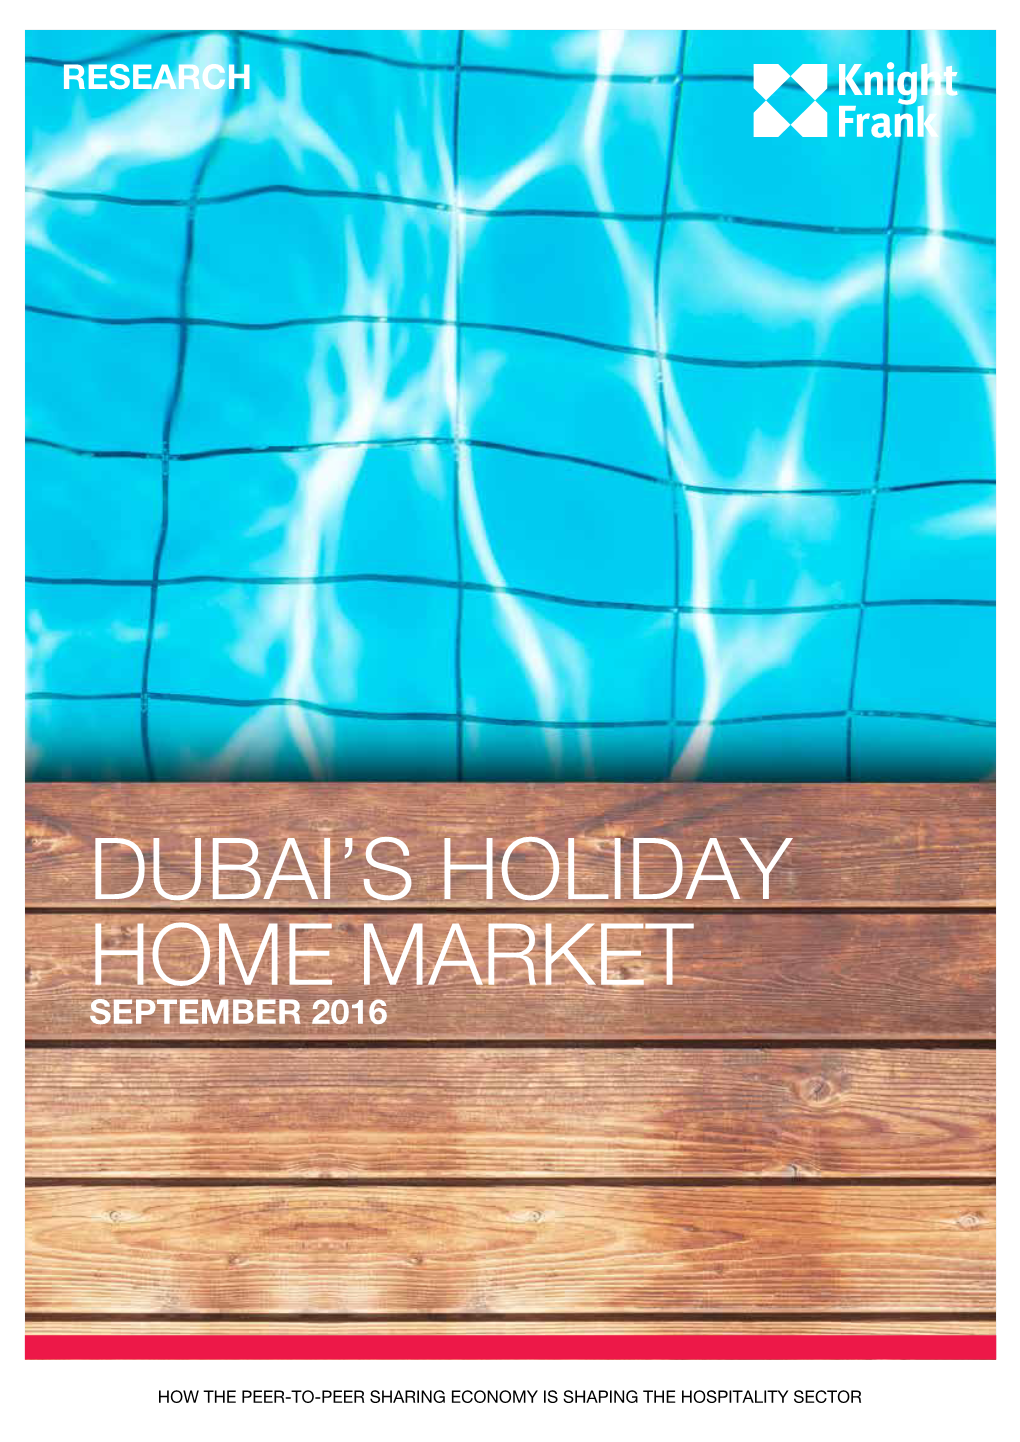 Dubai's Holiday Home Market